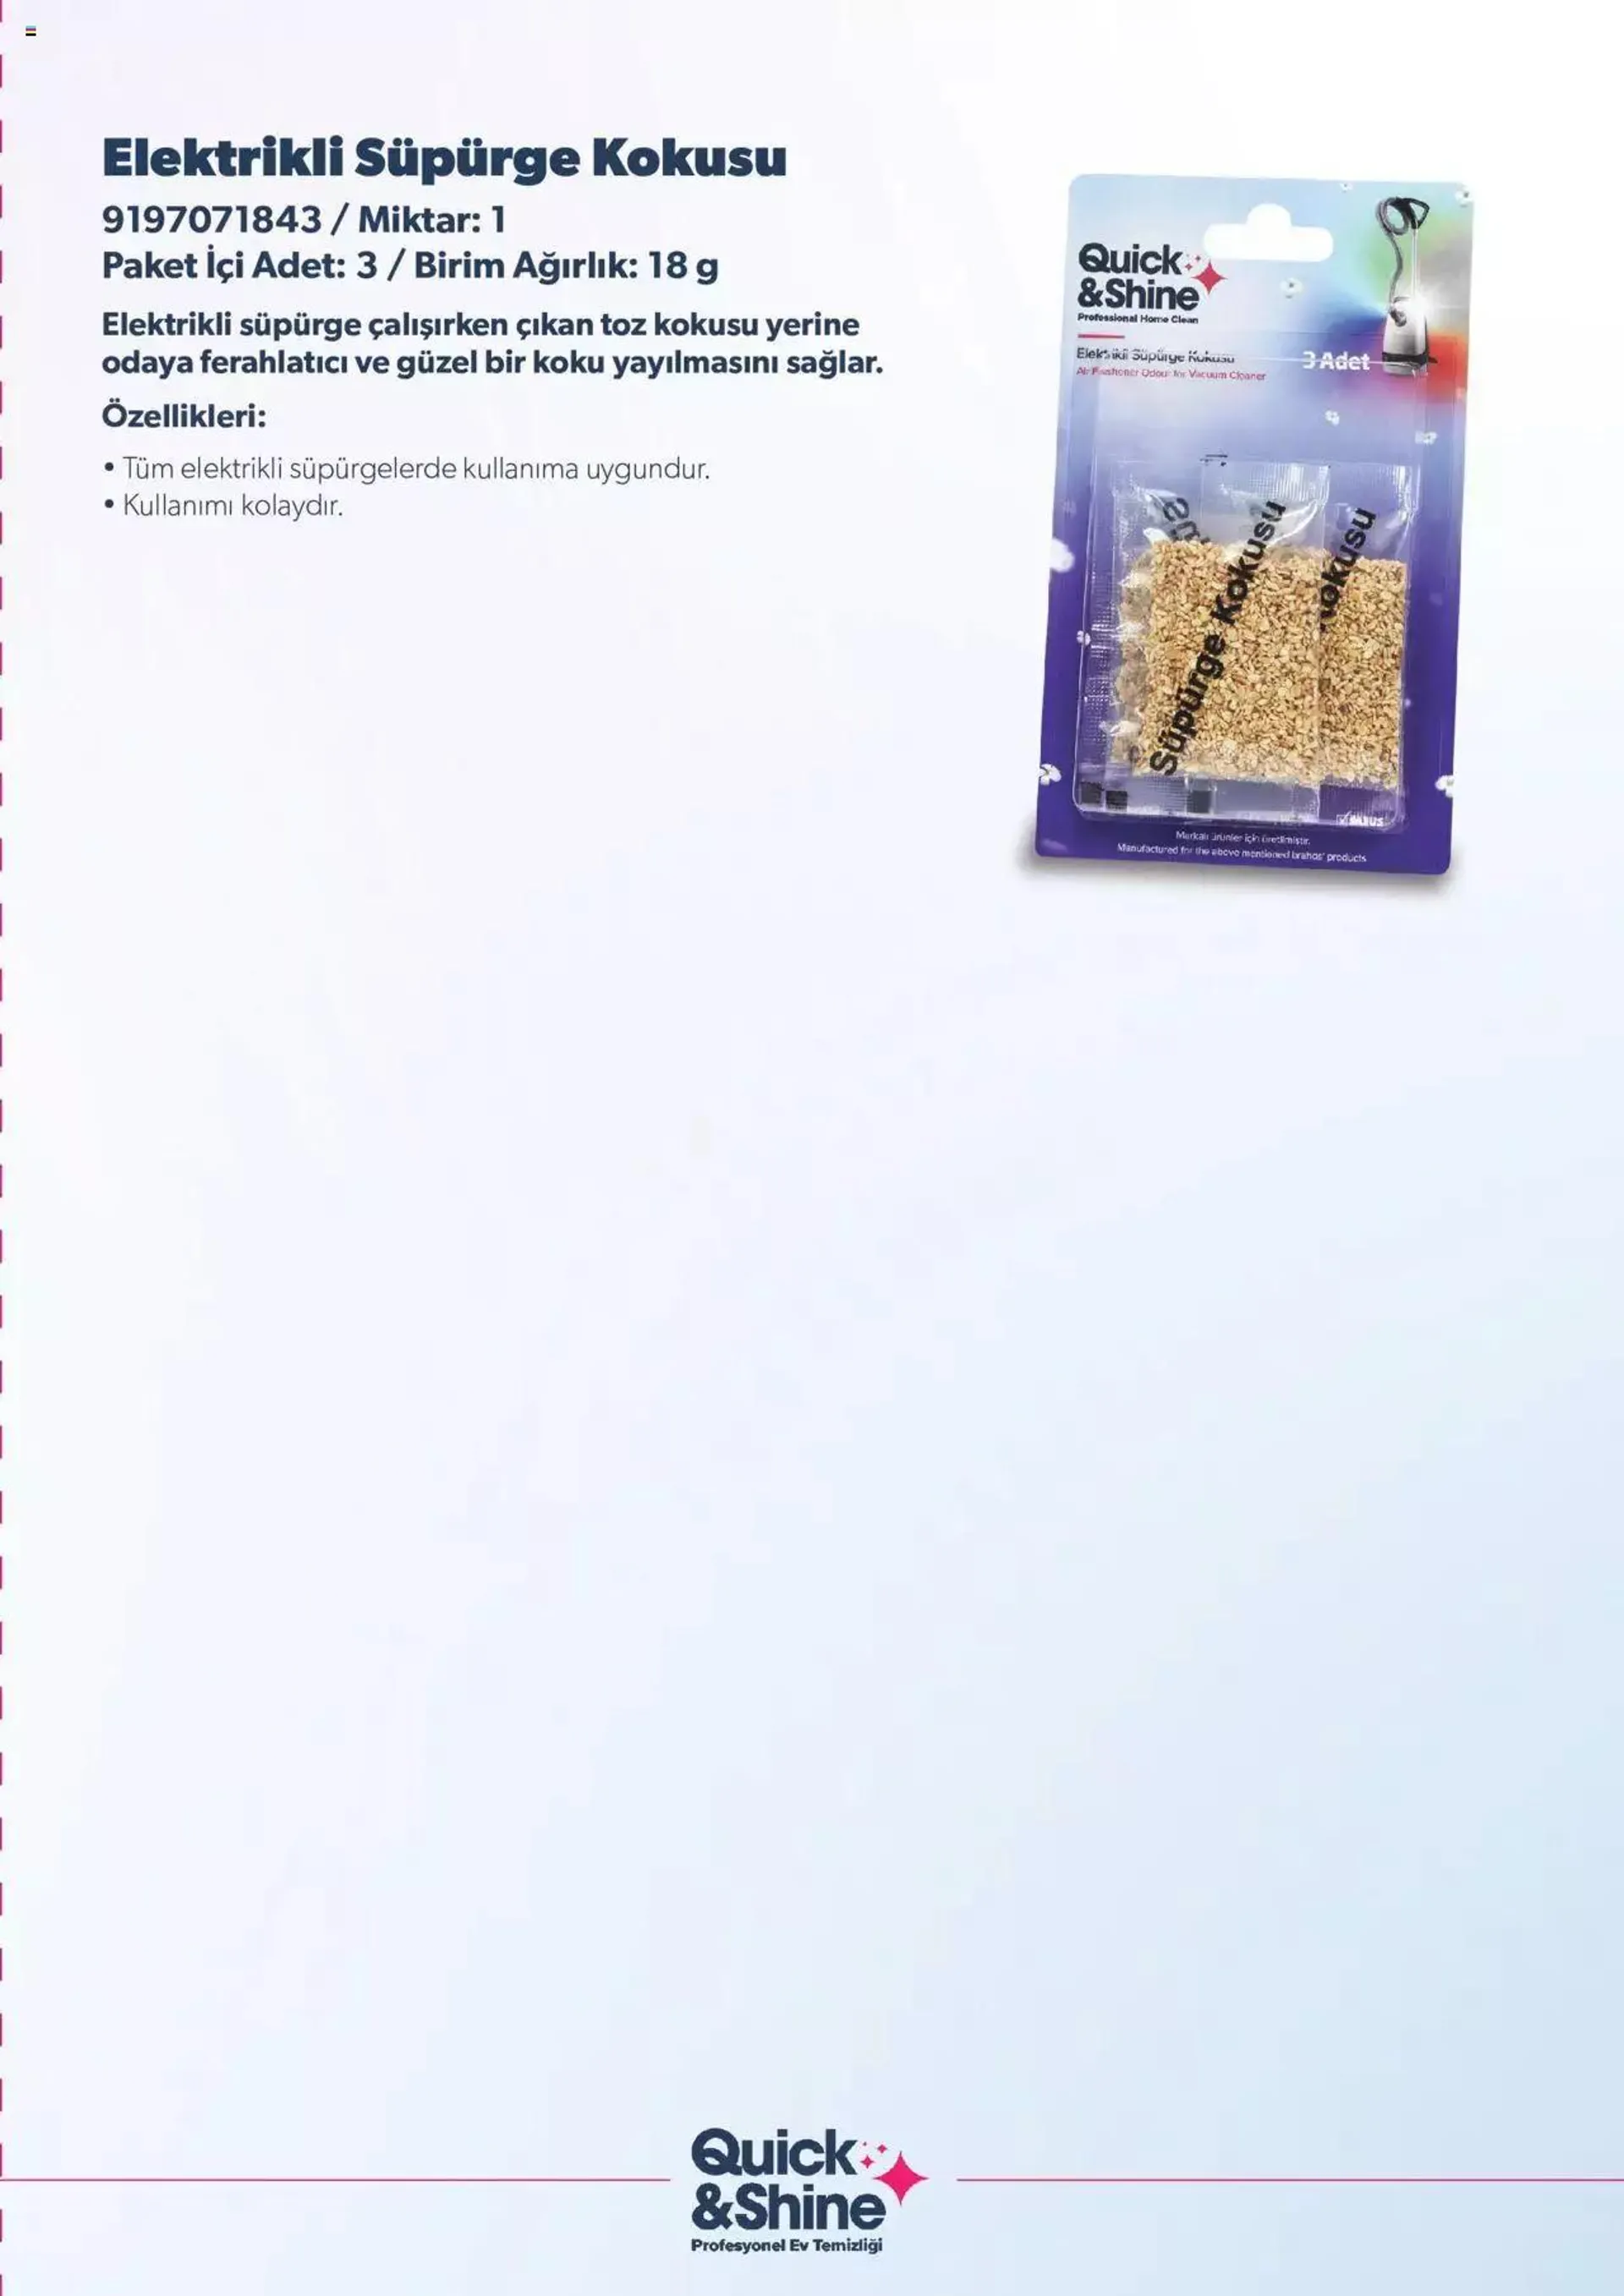 Arçelik Katalog - Quick & Shine Temizlik ve Bakım Ürünleri - 10